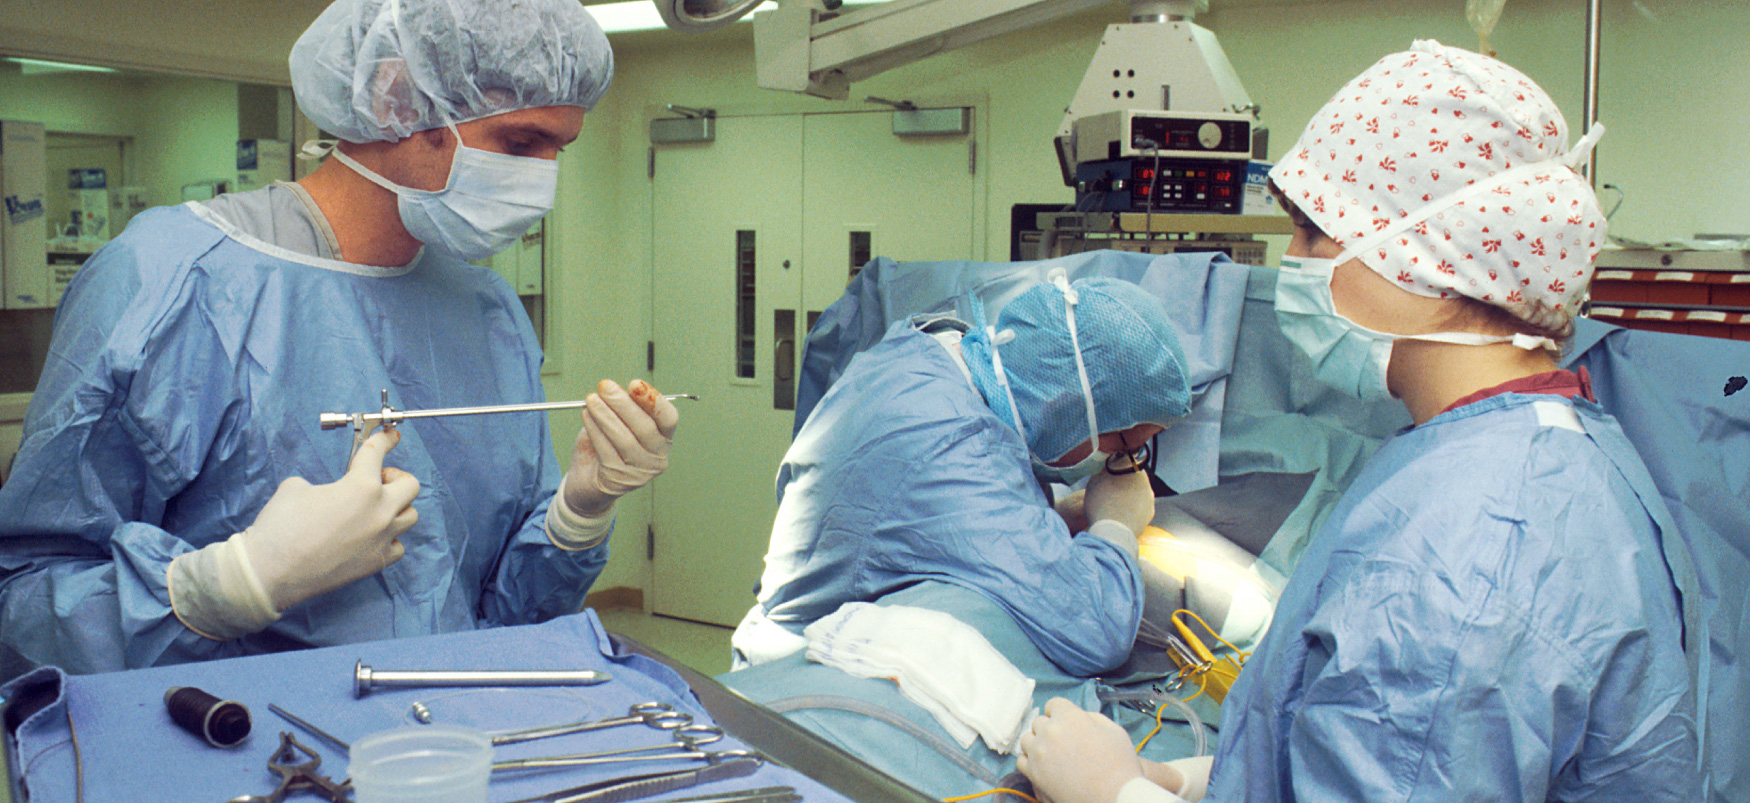 Три медичні працівники, які носять засоби індивідуального захисту, готують інструменти в операційних.